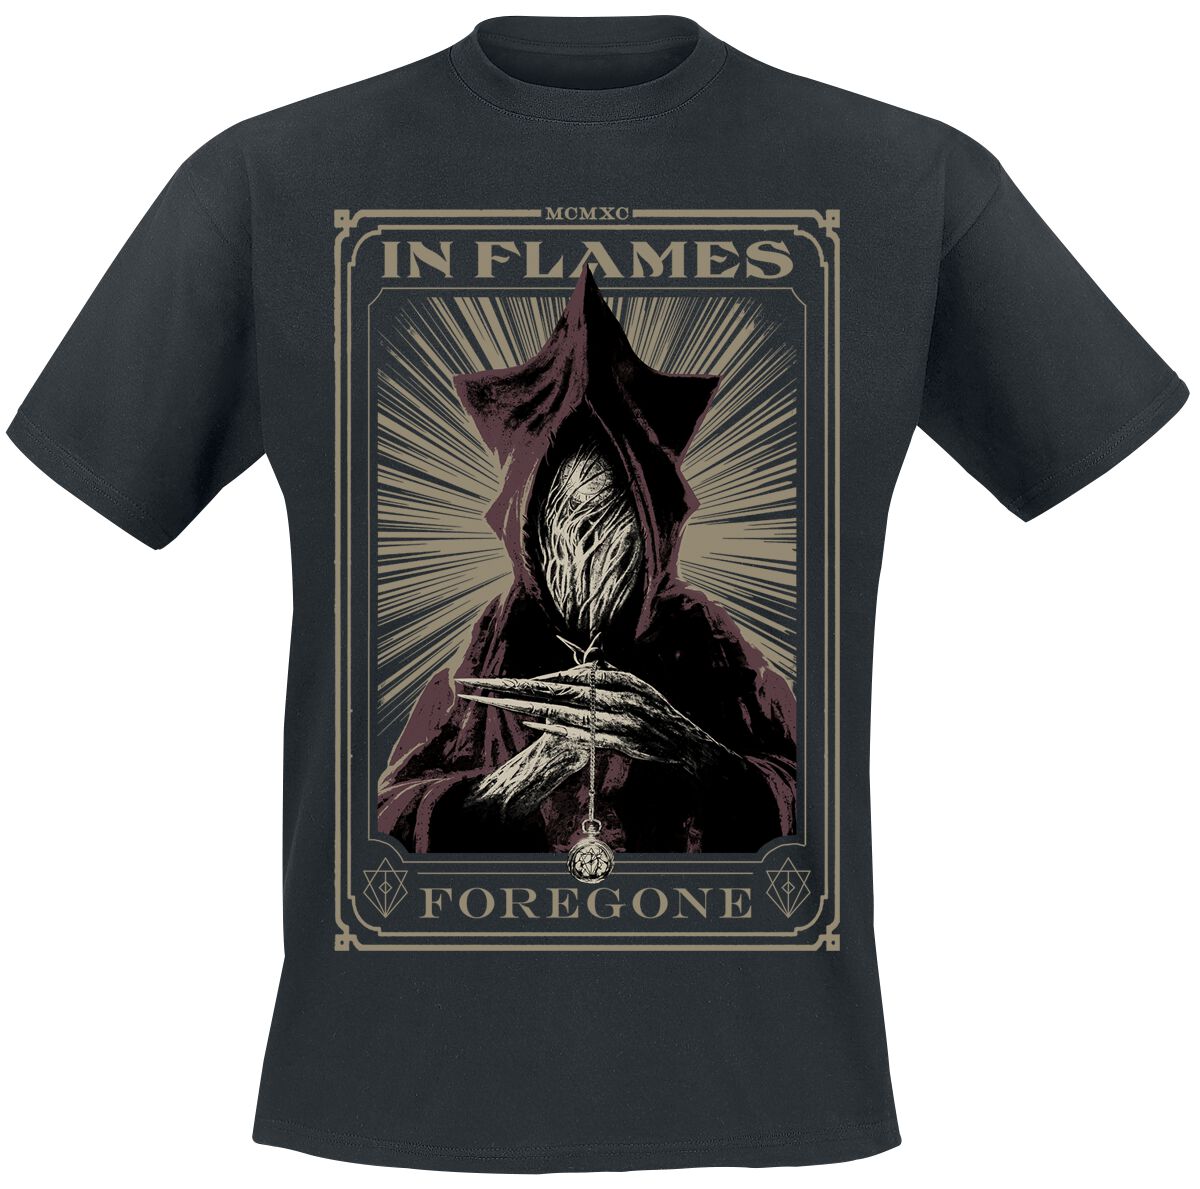 In Flames T-Shirt - Foregone Tarot - S bis 3XL - für Männer - Größe M - schwarz  - Lizenziertes Merchandise!